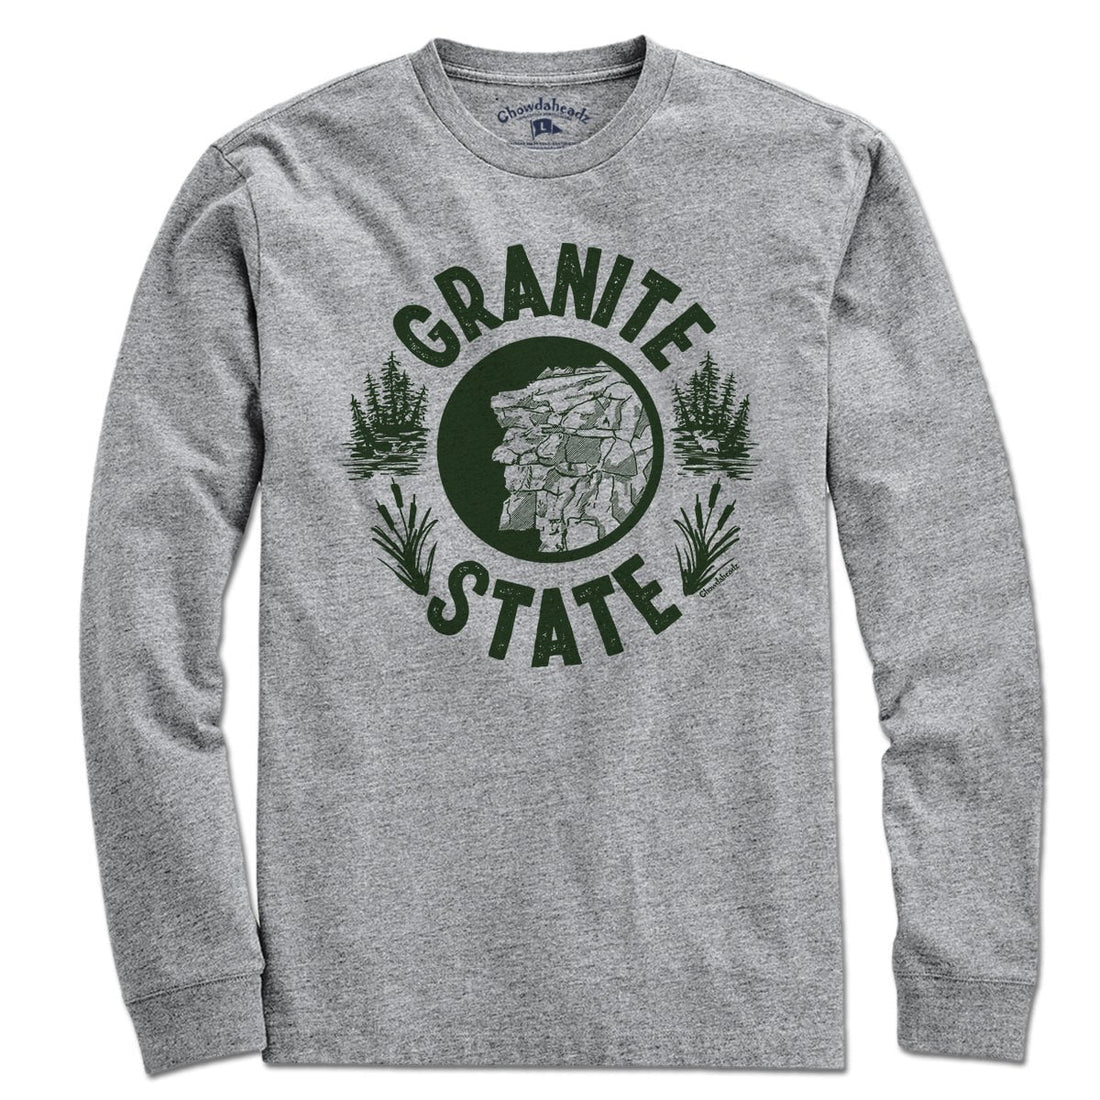 Granite State T-Shirt - Chowdaheadz